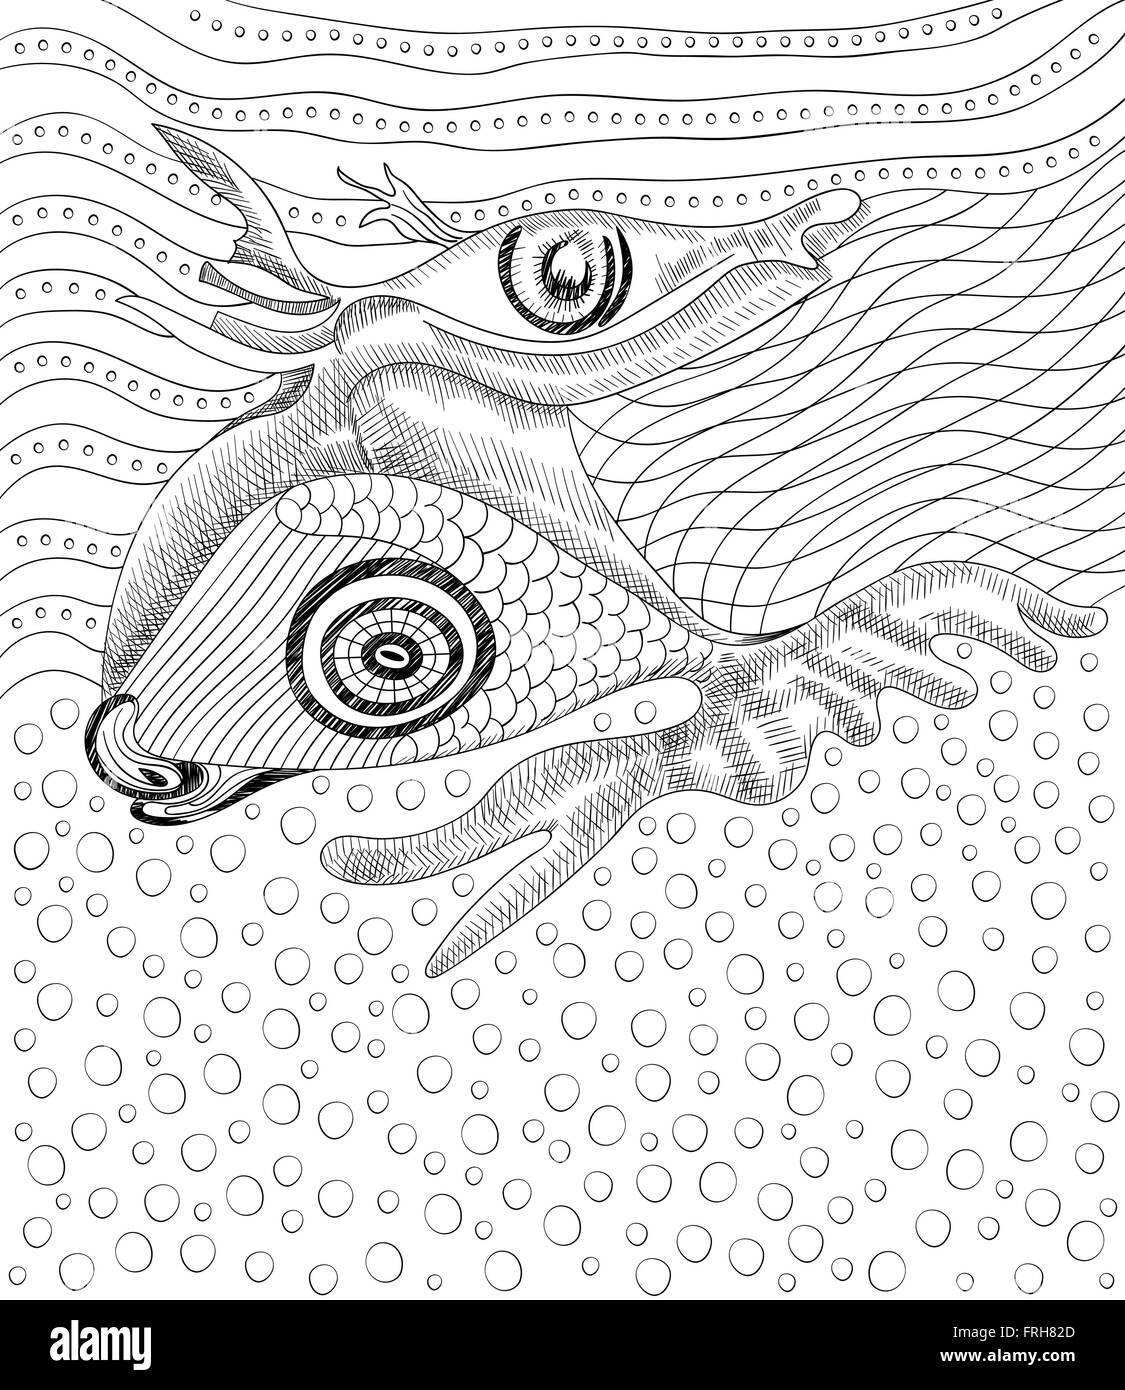 Surreal dessin à la main et le poisson, modèle abstrait avec contours noirs, peuvent utiliser pour les affiches, autocollants, cartes, livre de coloriage Illustration de Vecteur